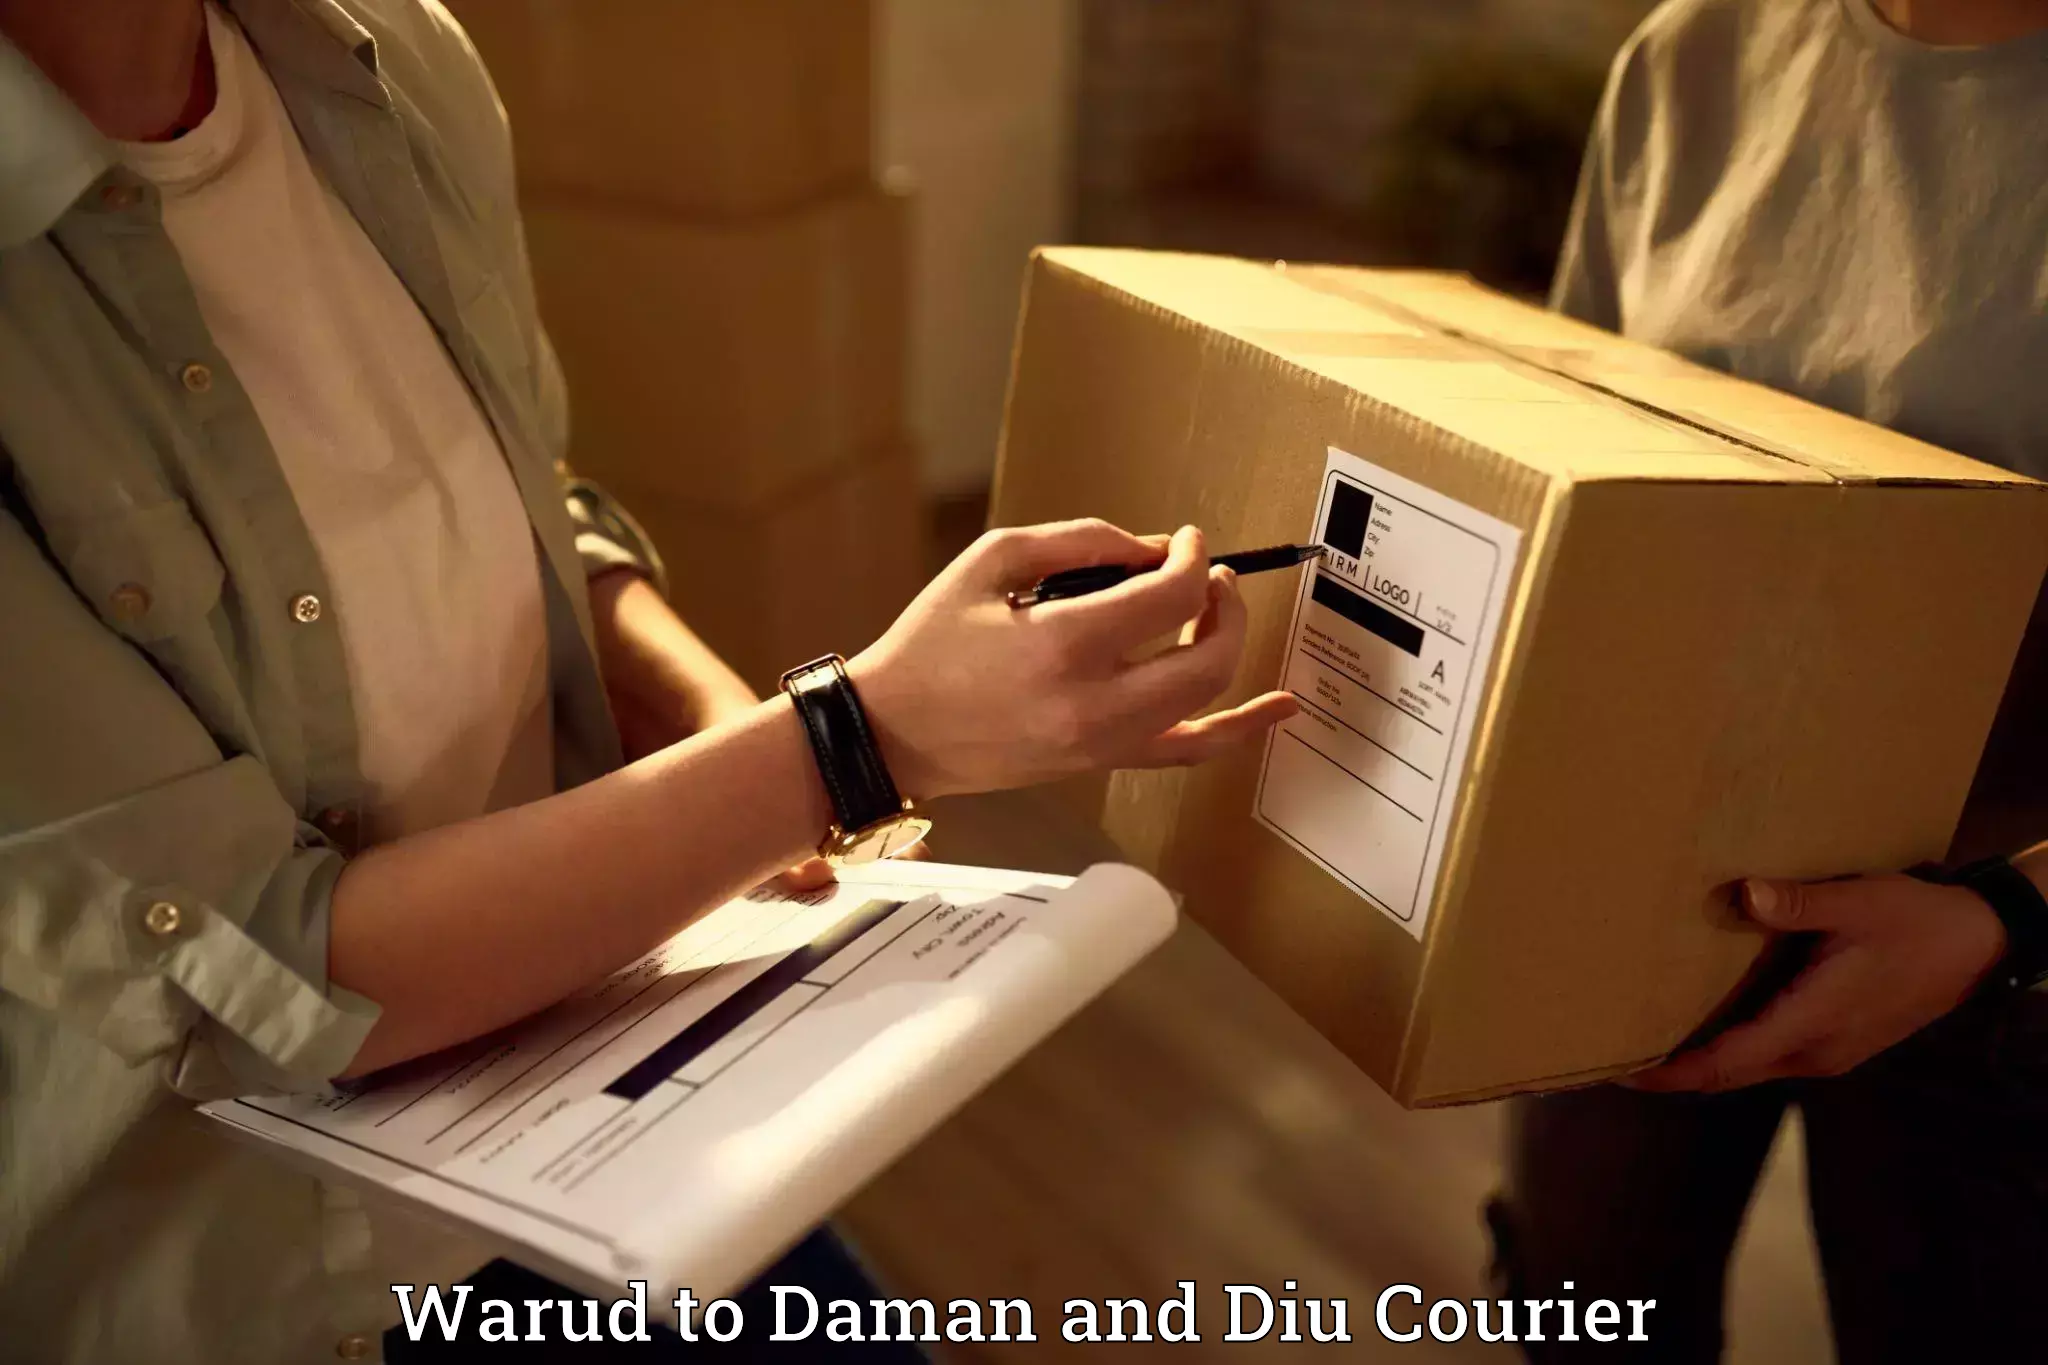 Trusted furniture movers Warud to Diu